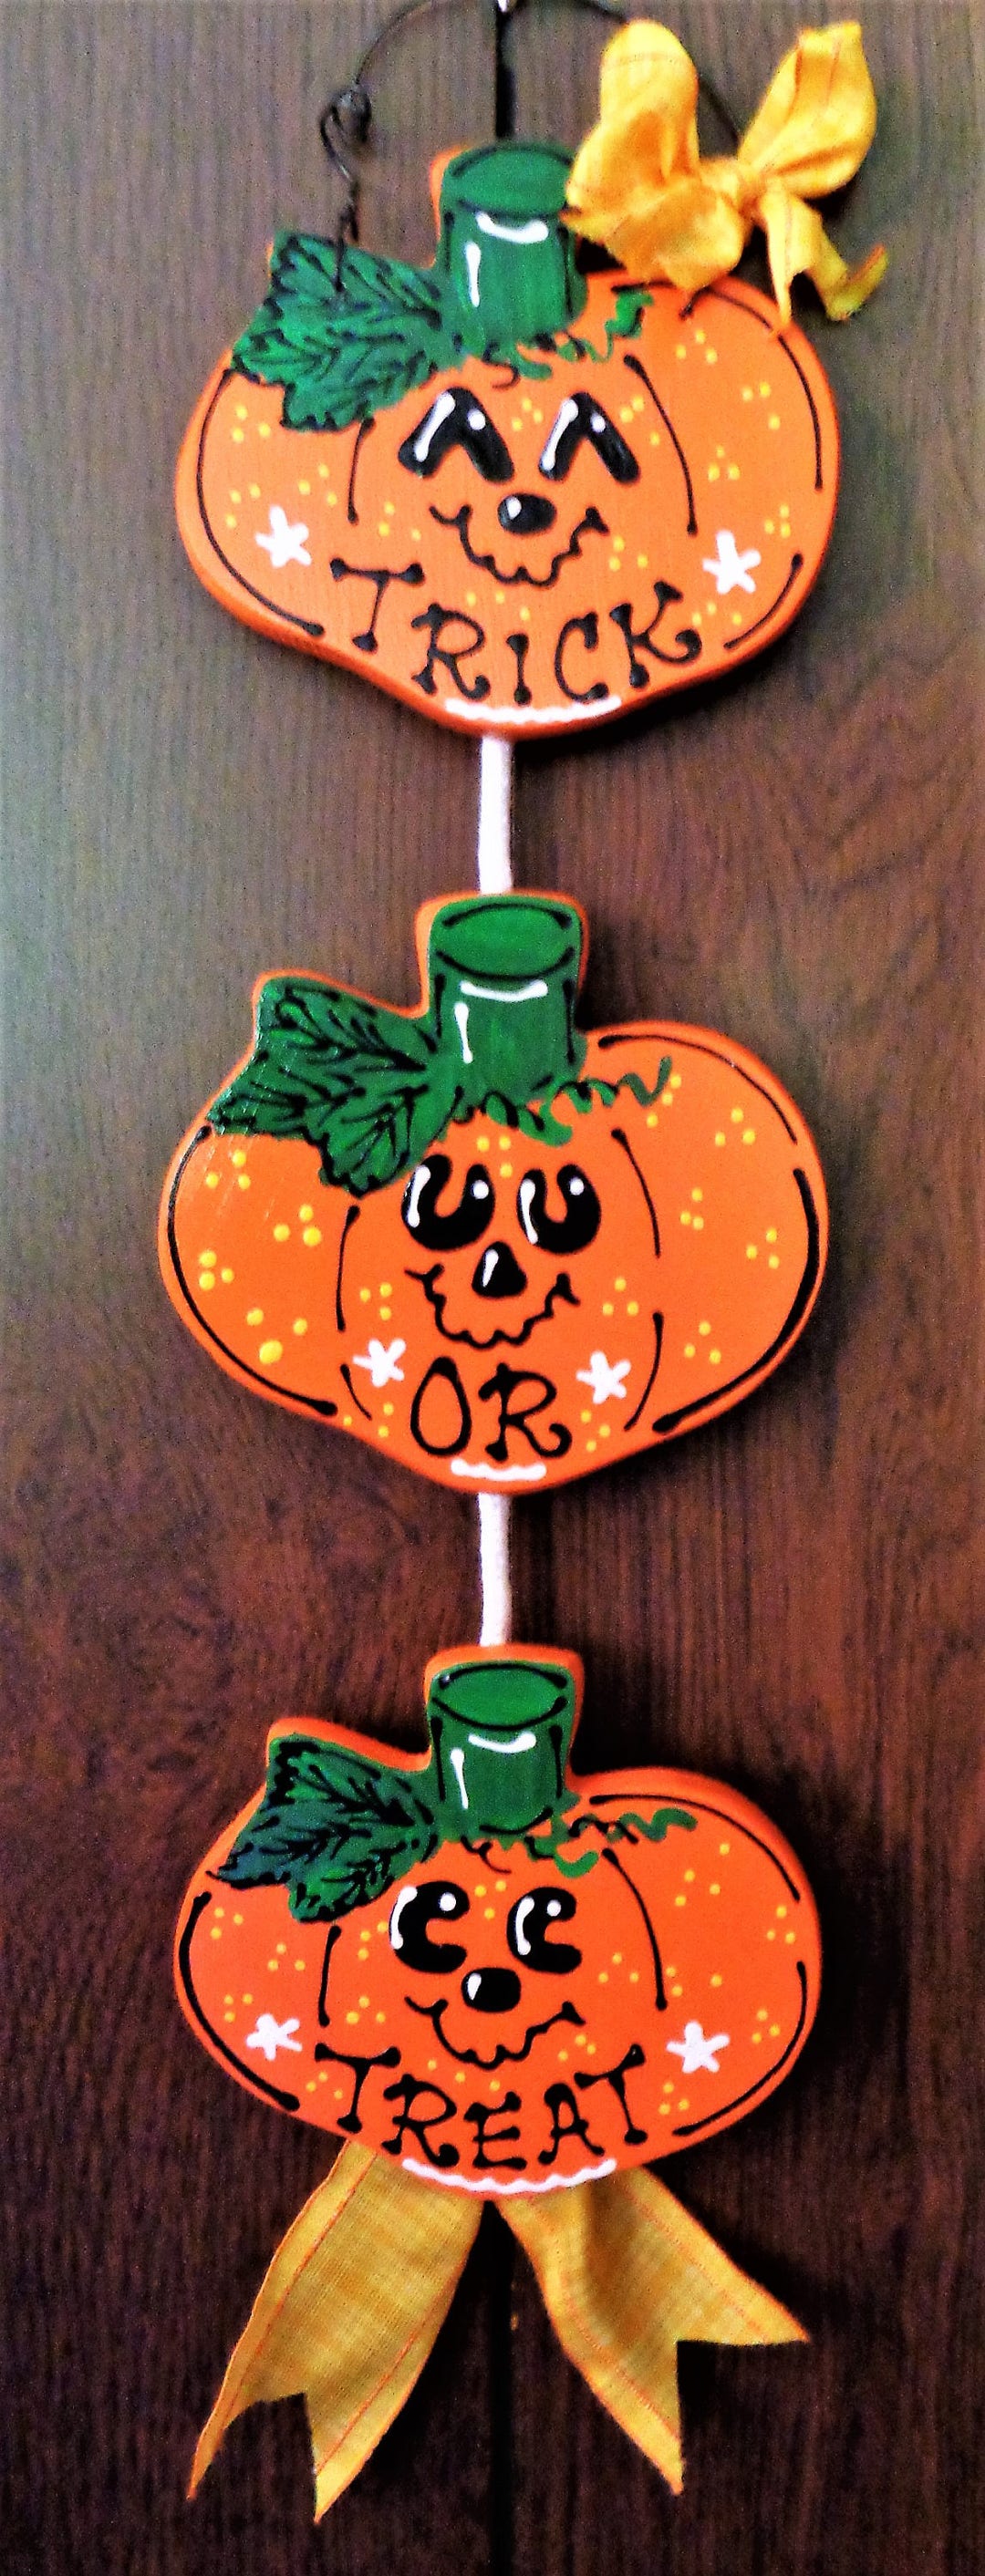 TRICK OR TREAT Pumpkins Halloween Hanger Sign Fall Autumn Decor Pumpkin ...